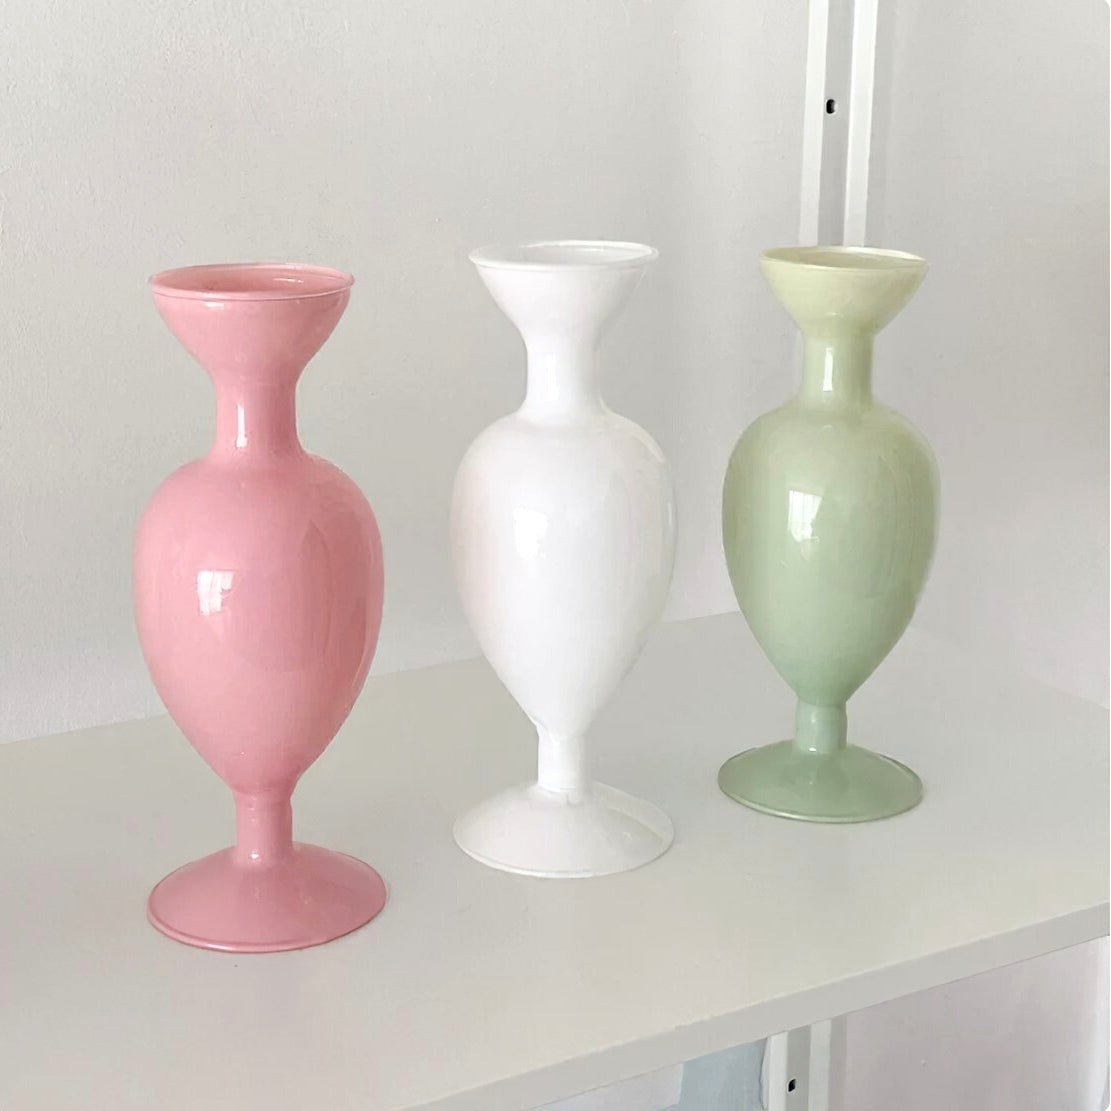 Pink, white and green elegant romantic glass flower vases